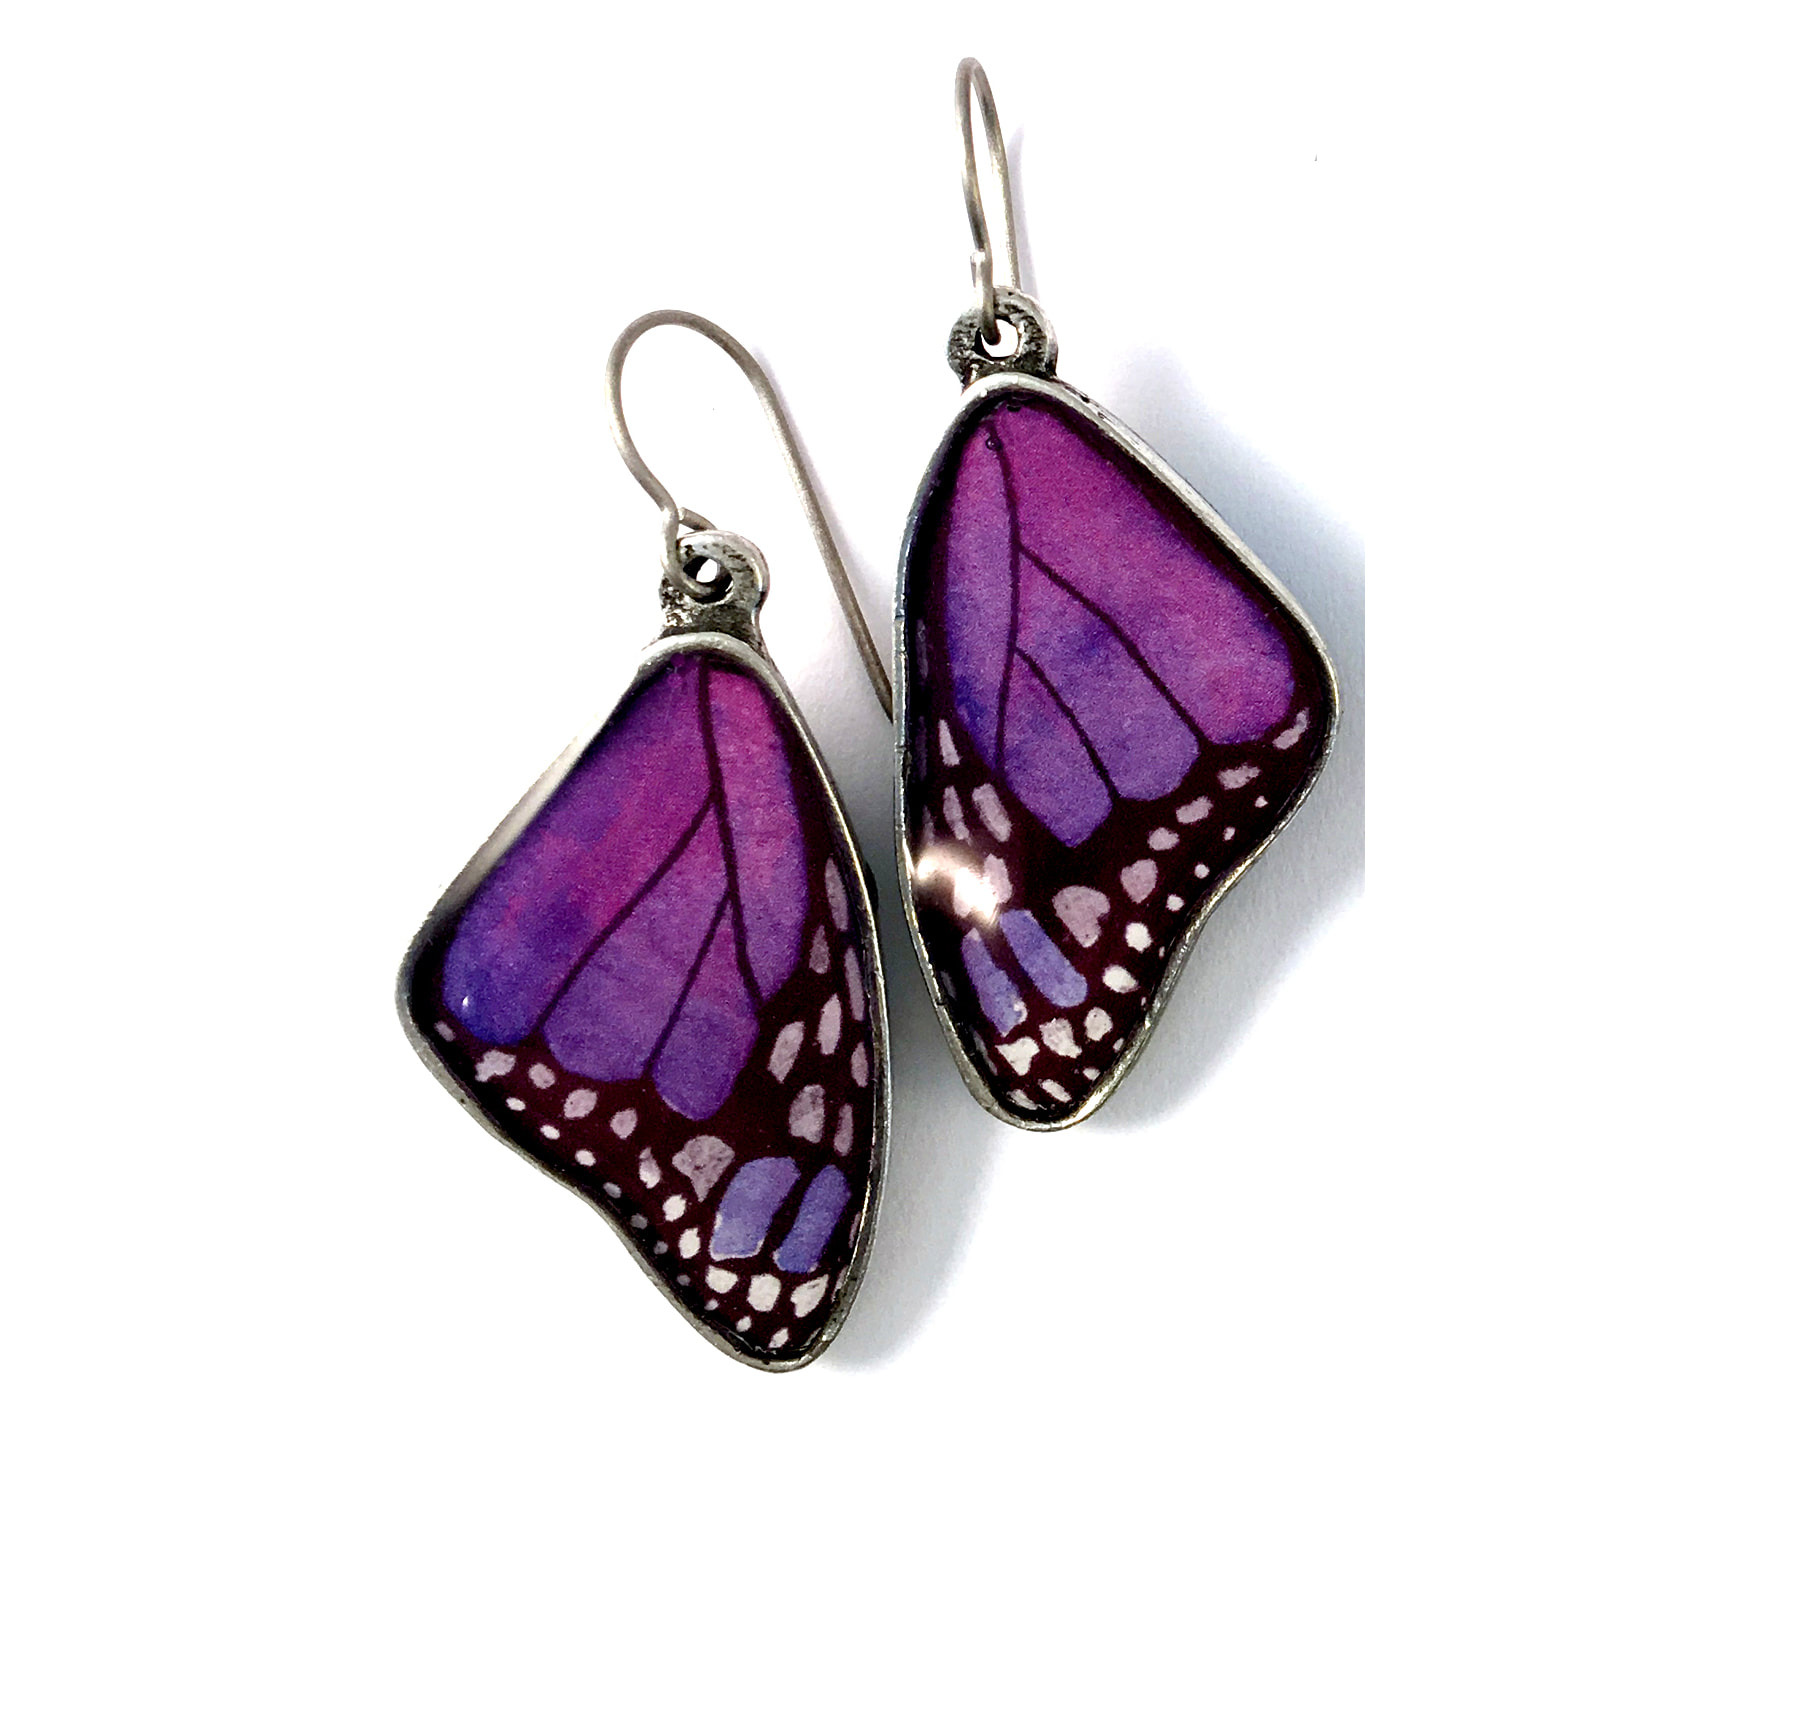 Buy Delicate Butterfly Wing Earrings Novelty Earrings Unique Earrings Fun  Earrings Pretty Earrings Online in India - Etsy